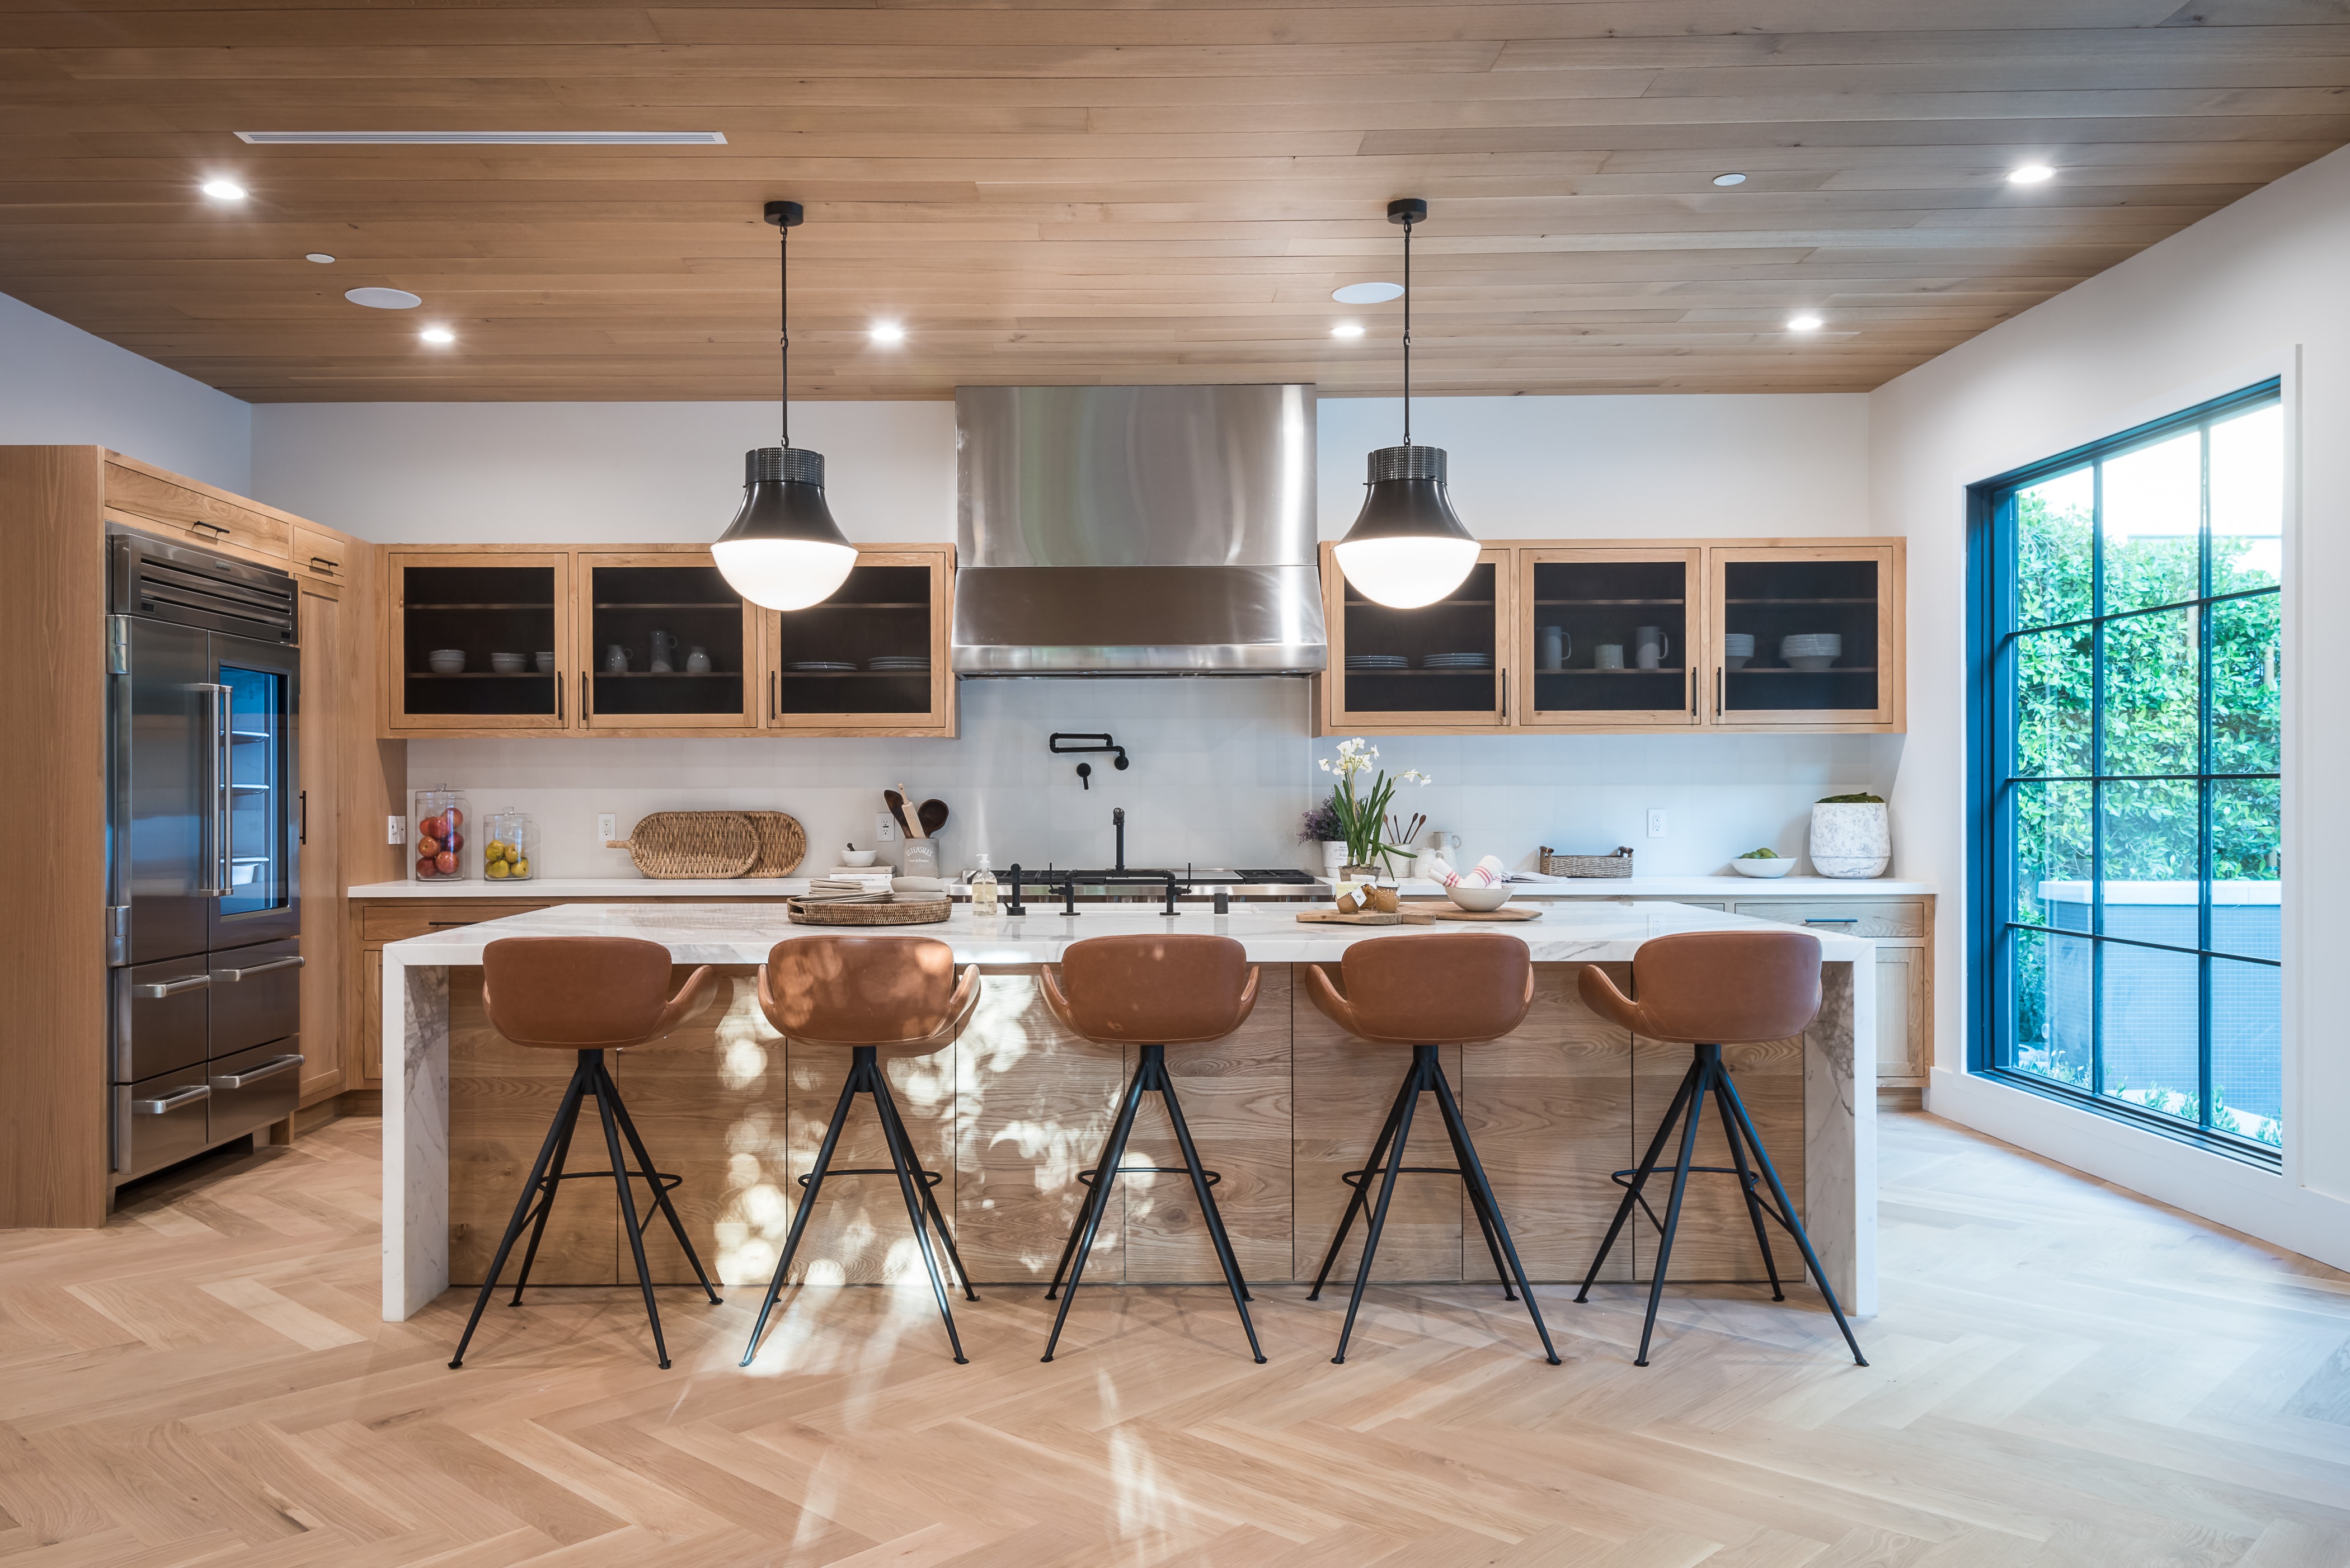 choosing your kitchen design